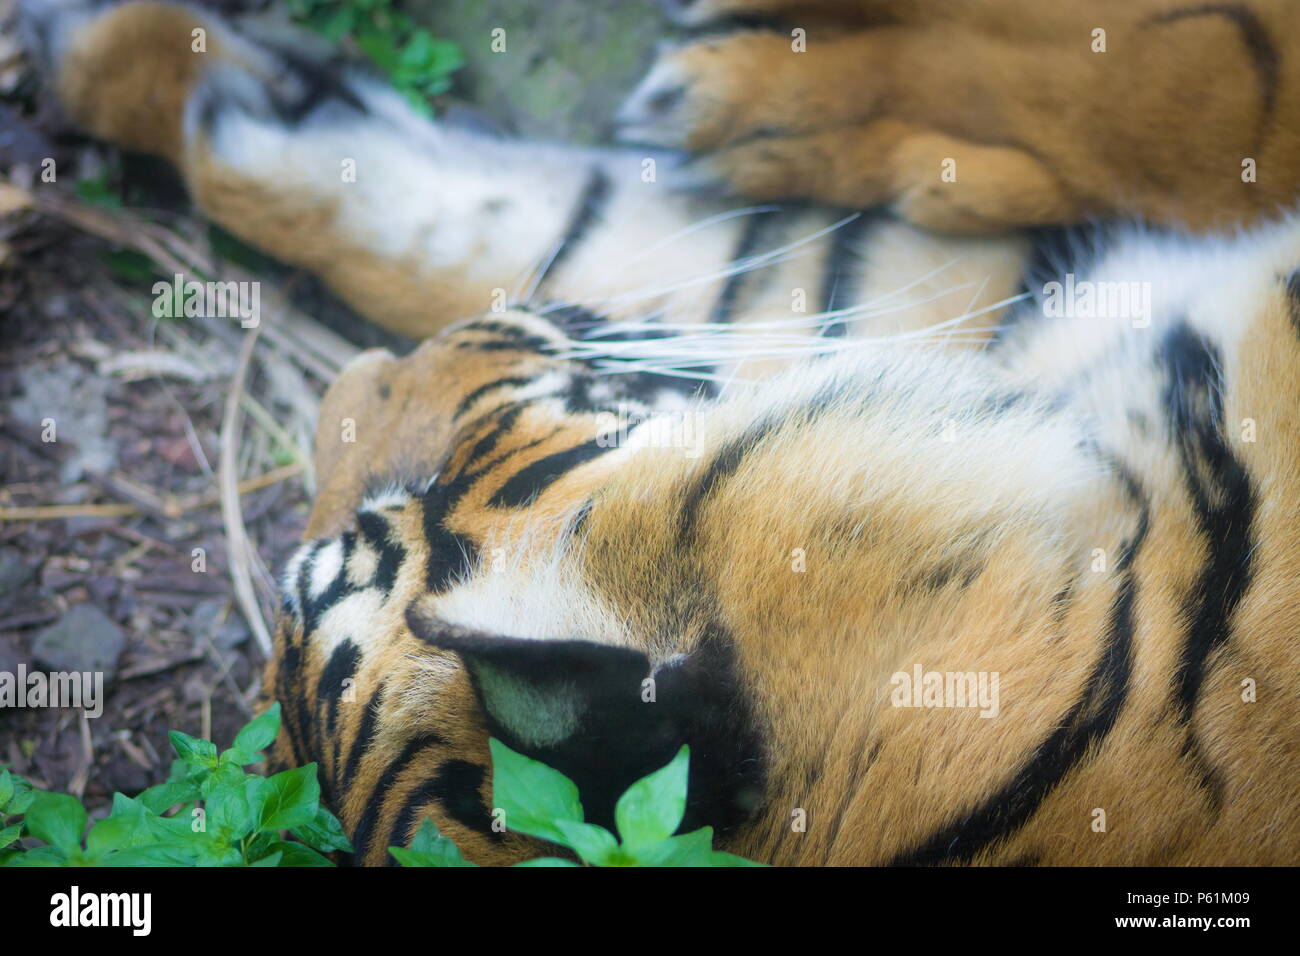 Le tigre de Sumatra (Panthera tigris sondaica) est une population de tigres qui vit dans l'île indonésienne de Sumatra et est gravement menacé. Banque D'Images